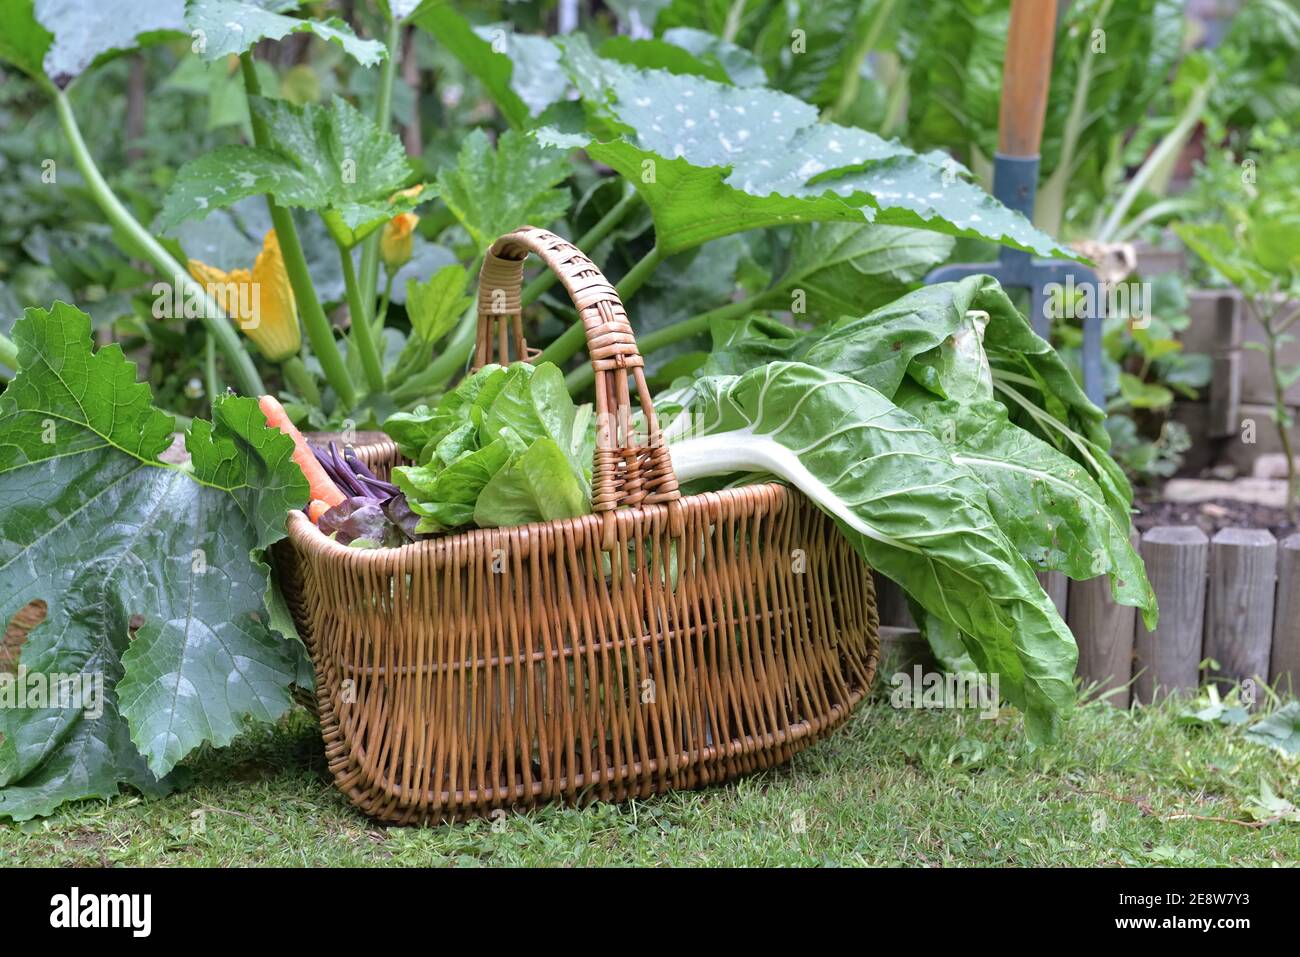 foglia di bietole e lattuga in un cesto di vimini messo sul terreno in un orto Foto Stock